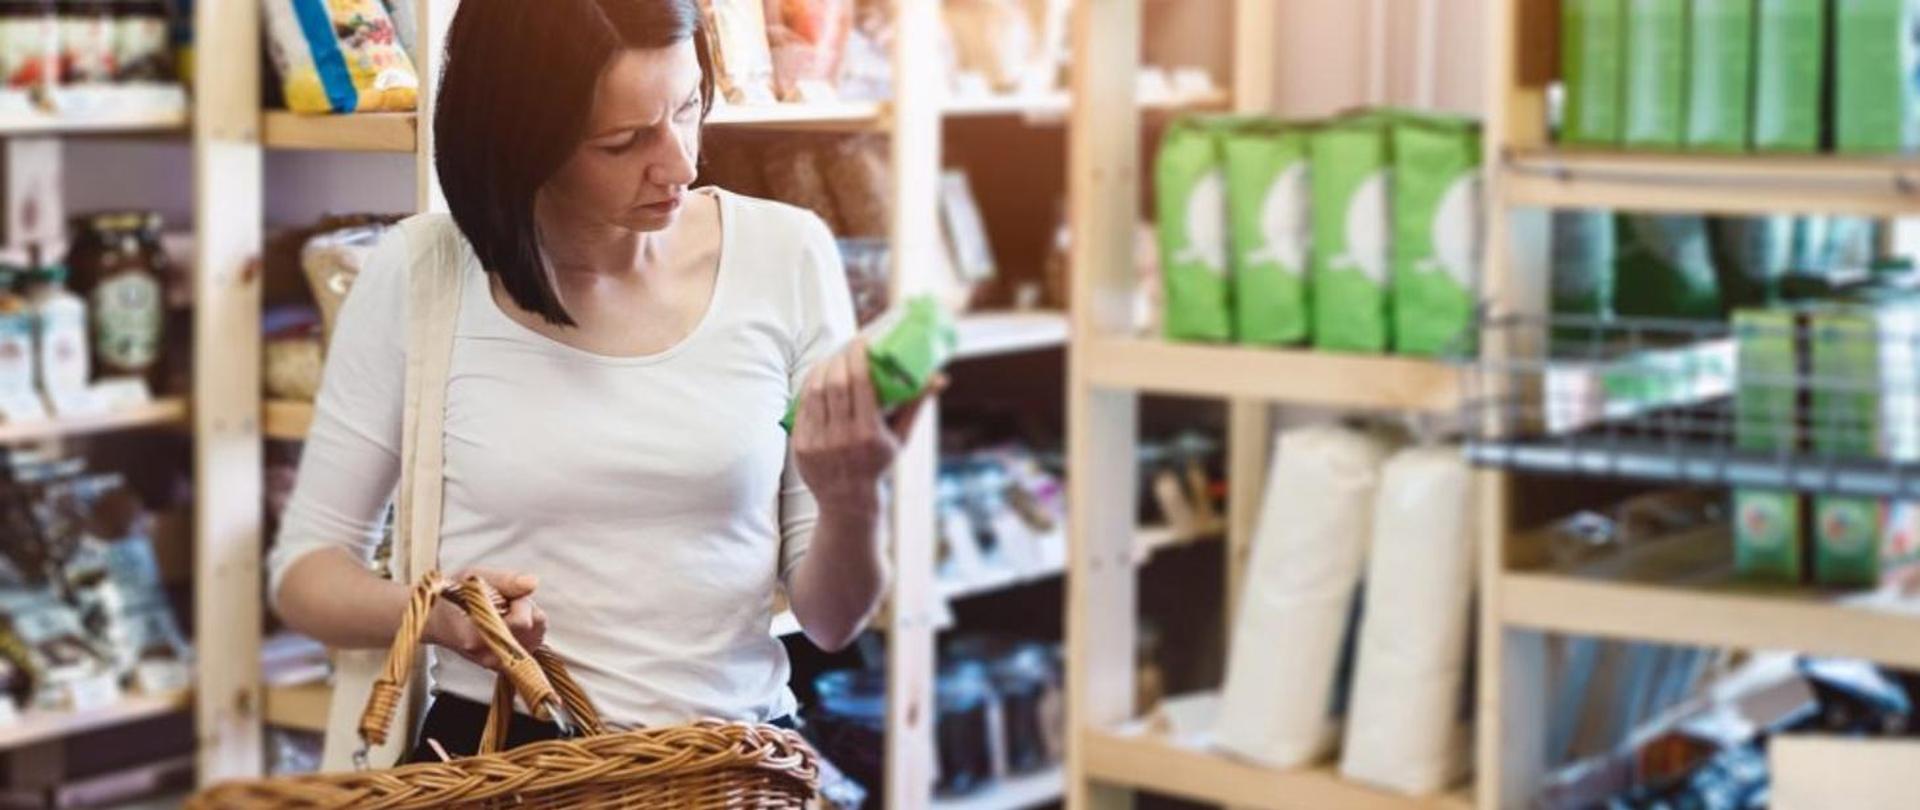 kobieta z koszykiem w ręku robiąca zakupy w sklepie - czyta etykietę